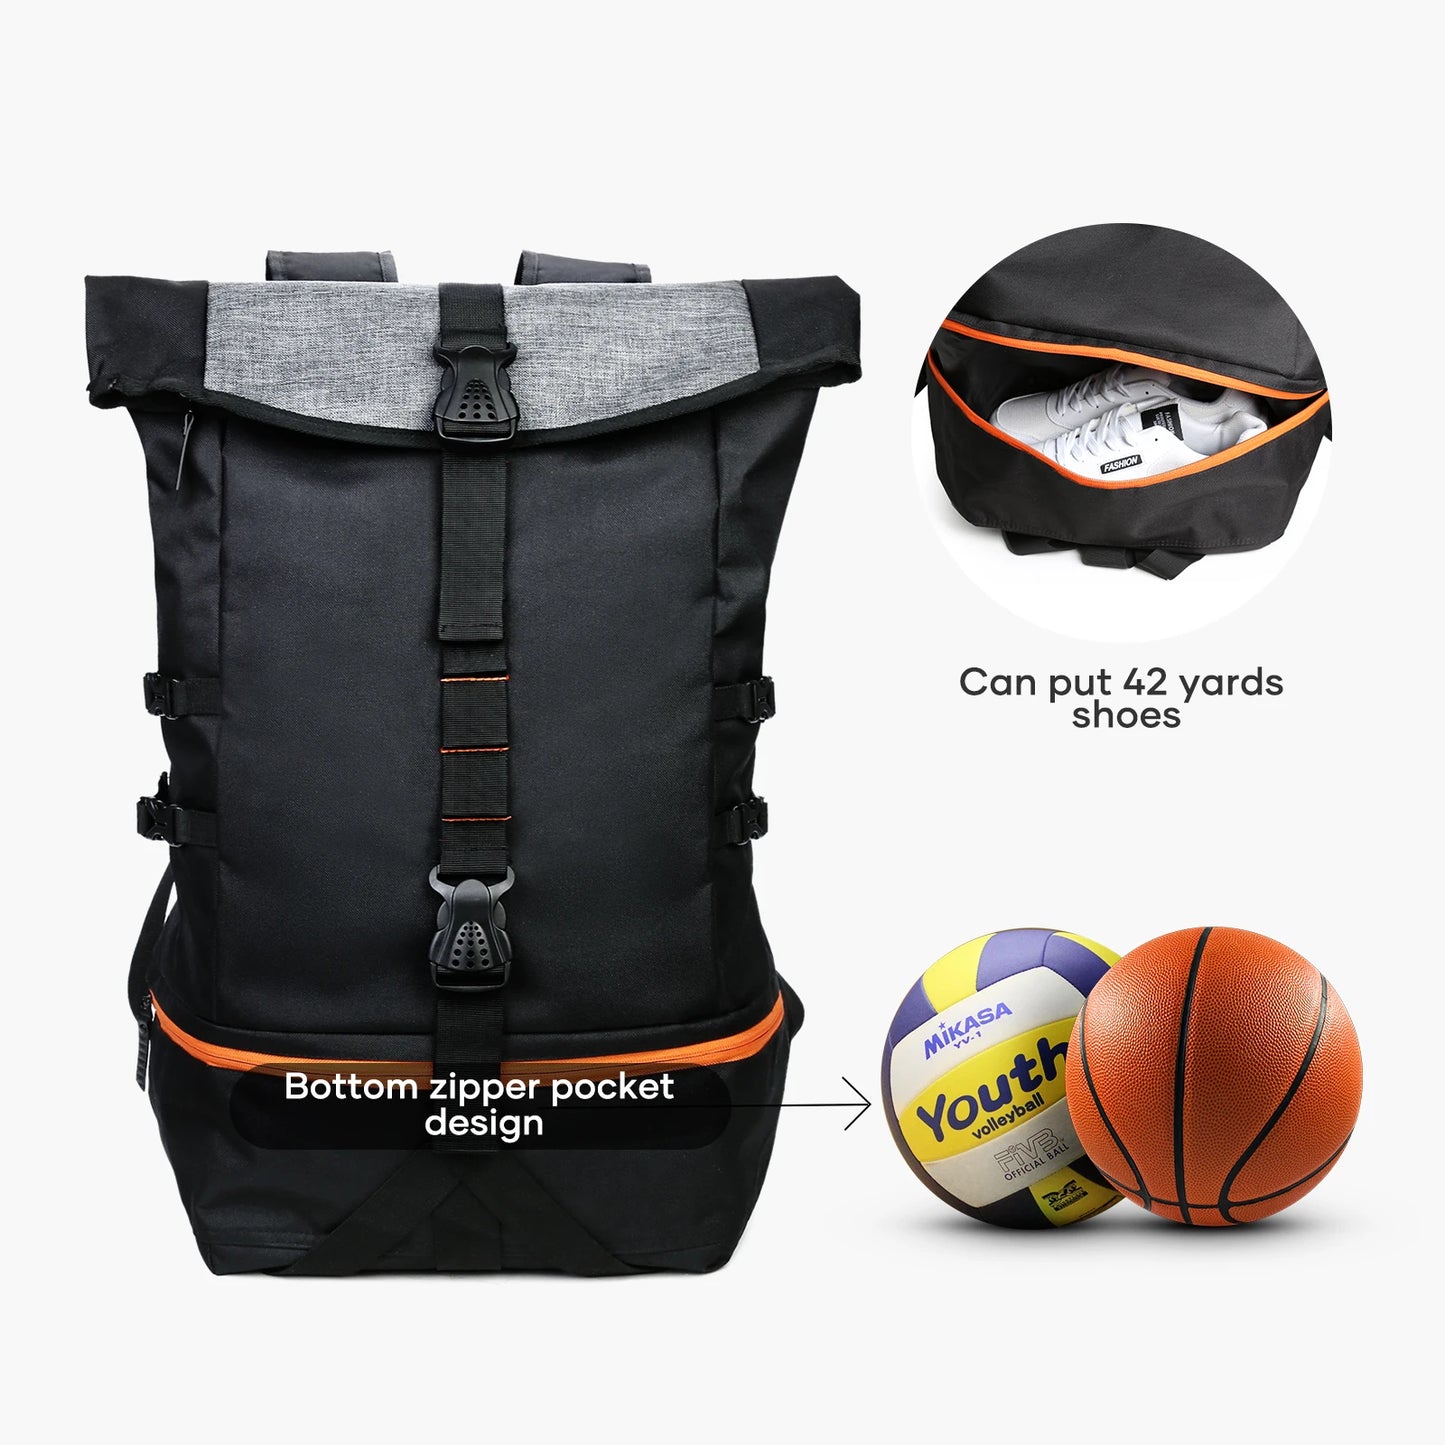 Çanta shpine basketbolli çanta e madhe sportive për burra me ndarje të veçantë të topit, çantë pajisje sportive për futboll, volejboll, udhëtim